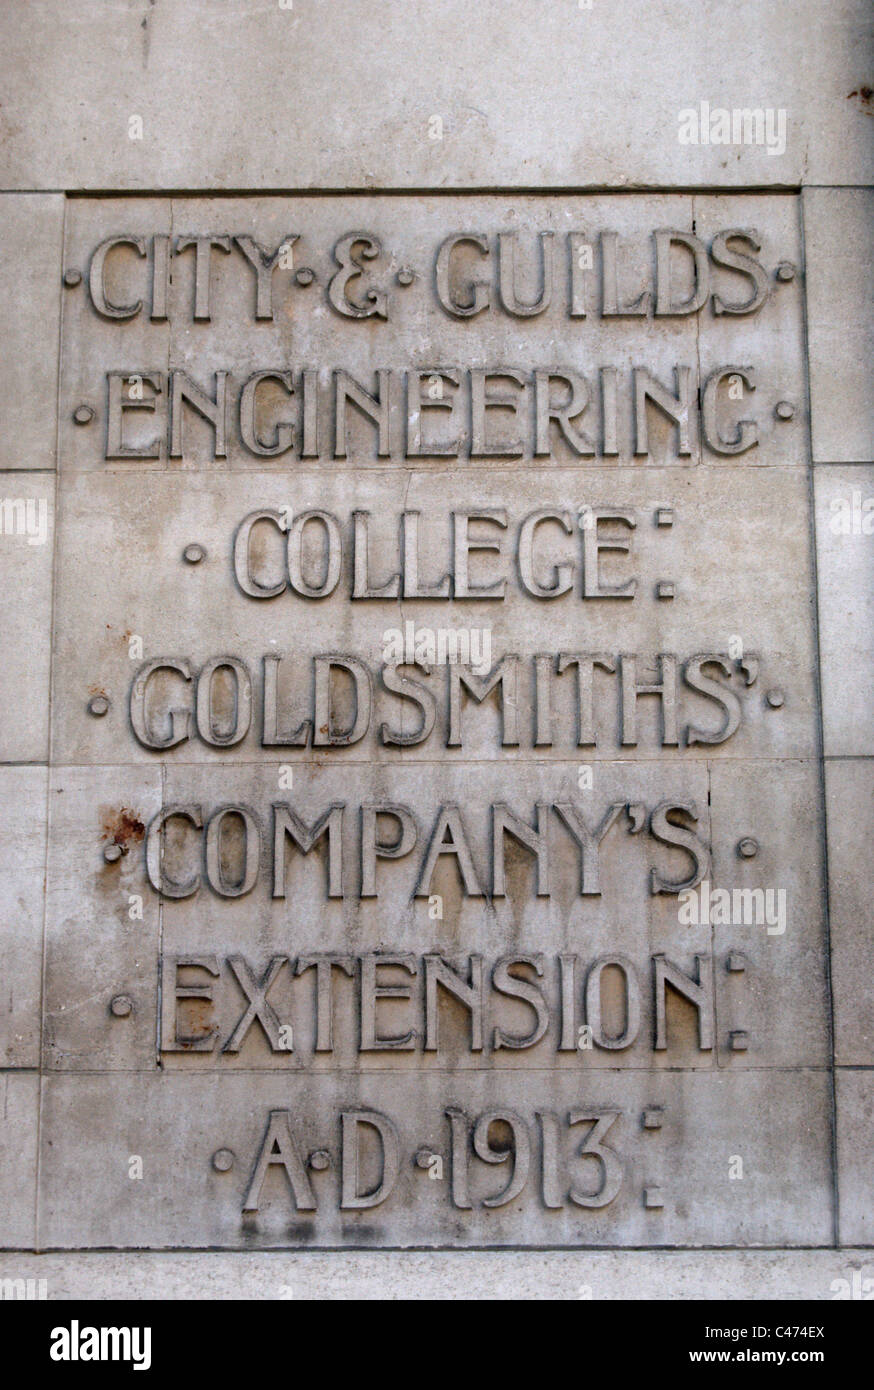 Iscrizione per la commemorazione del 1913 estensione della città e gilde engineering college, ora parte dell'Imperial College di Londra Foto Stock